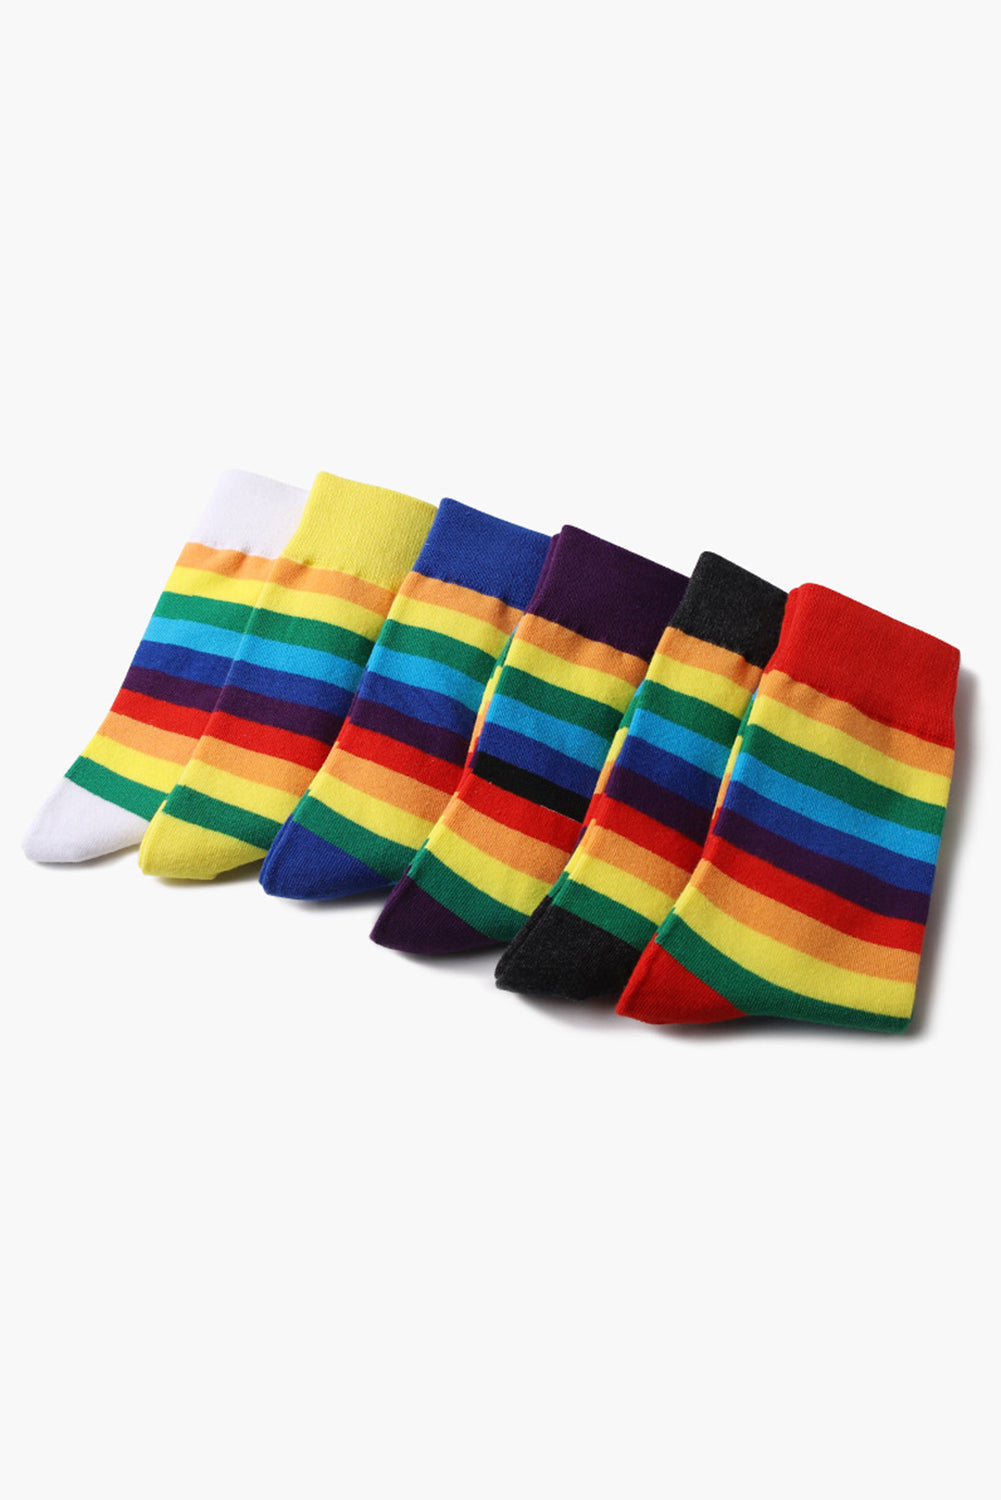 BH041619-8, Purple Pride Sport Socks Men Women Rainbow LGBTQ Accessories Socks